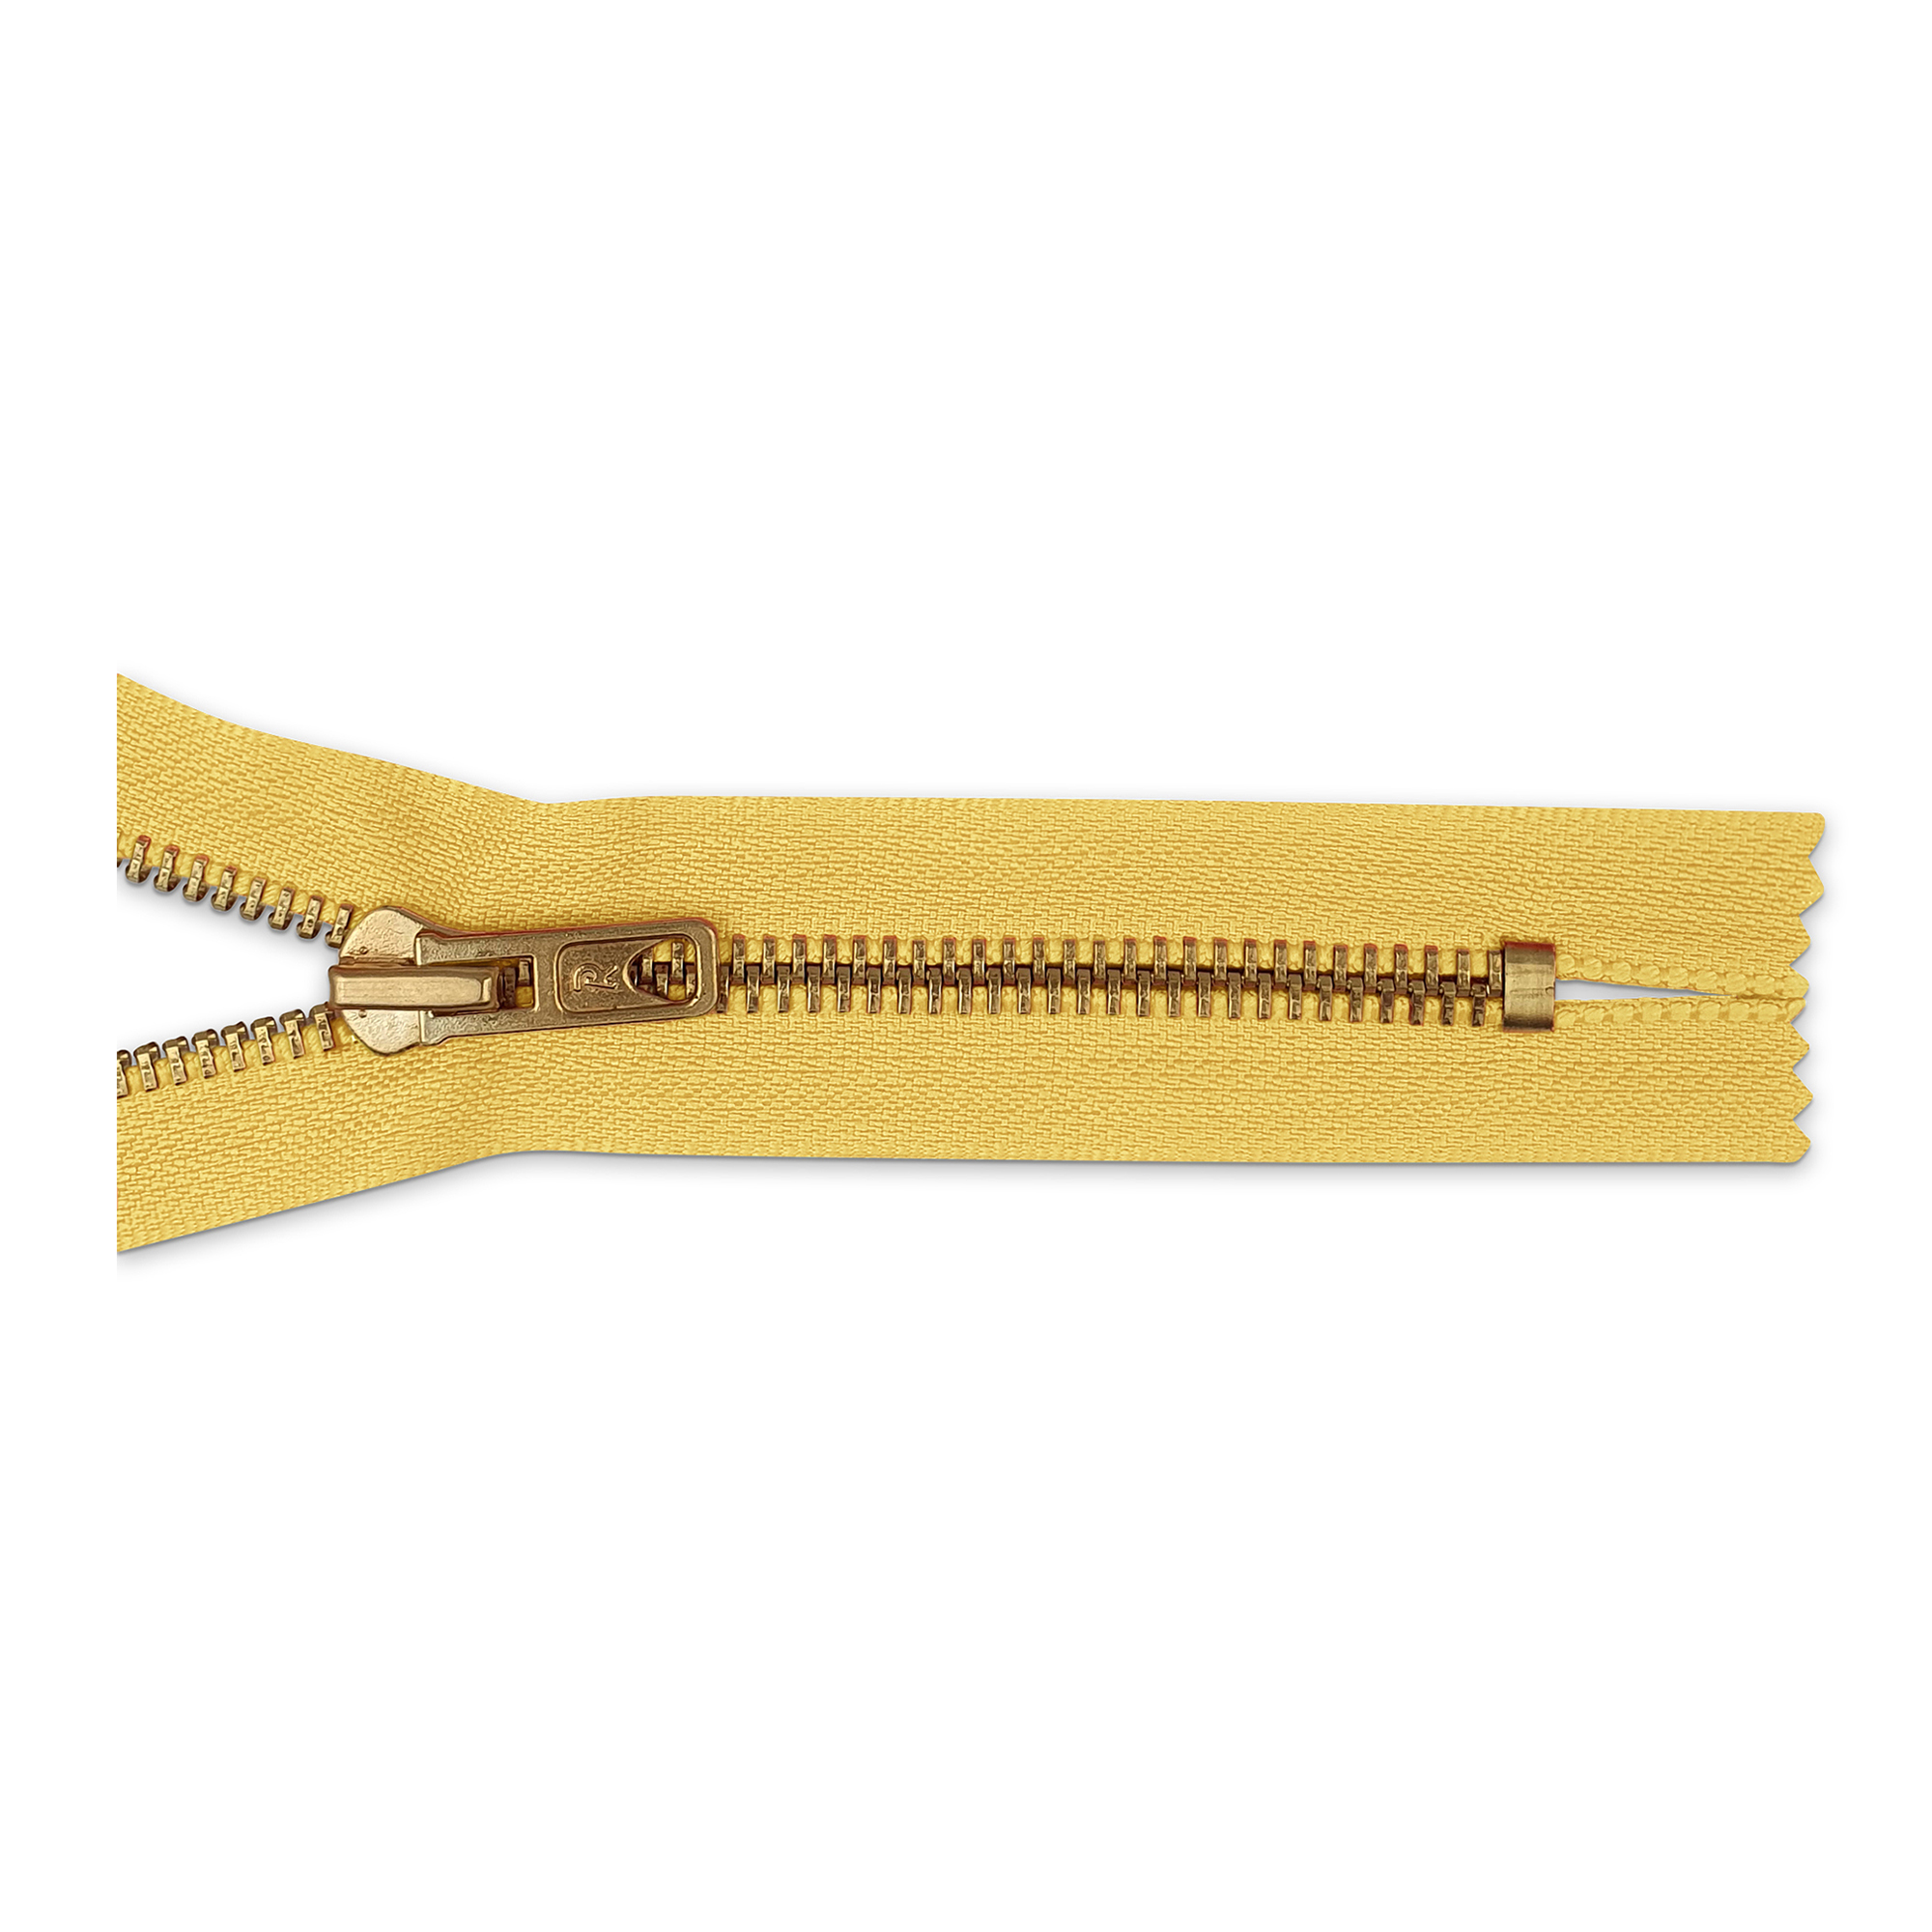 Reißverschluss, nicht teilbar, Metall goldf. breit, hellorange-gelb, hochwertiger Marken-Reißverschluss von Rubi/Barcelona